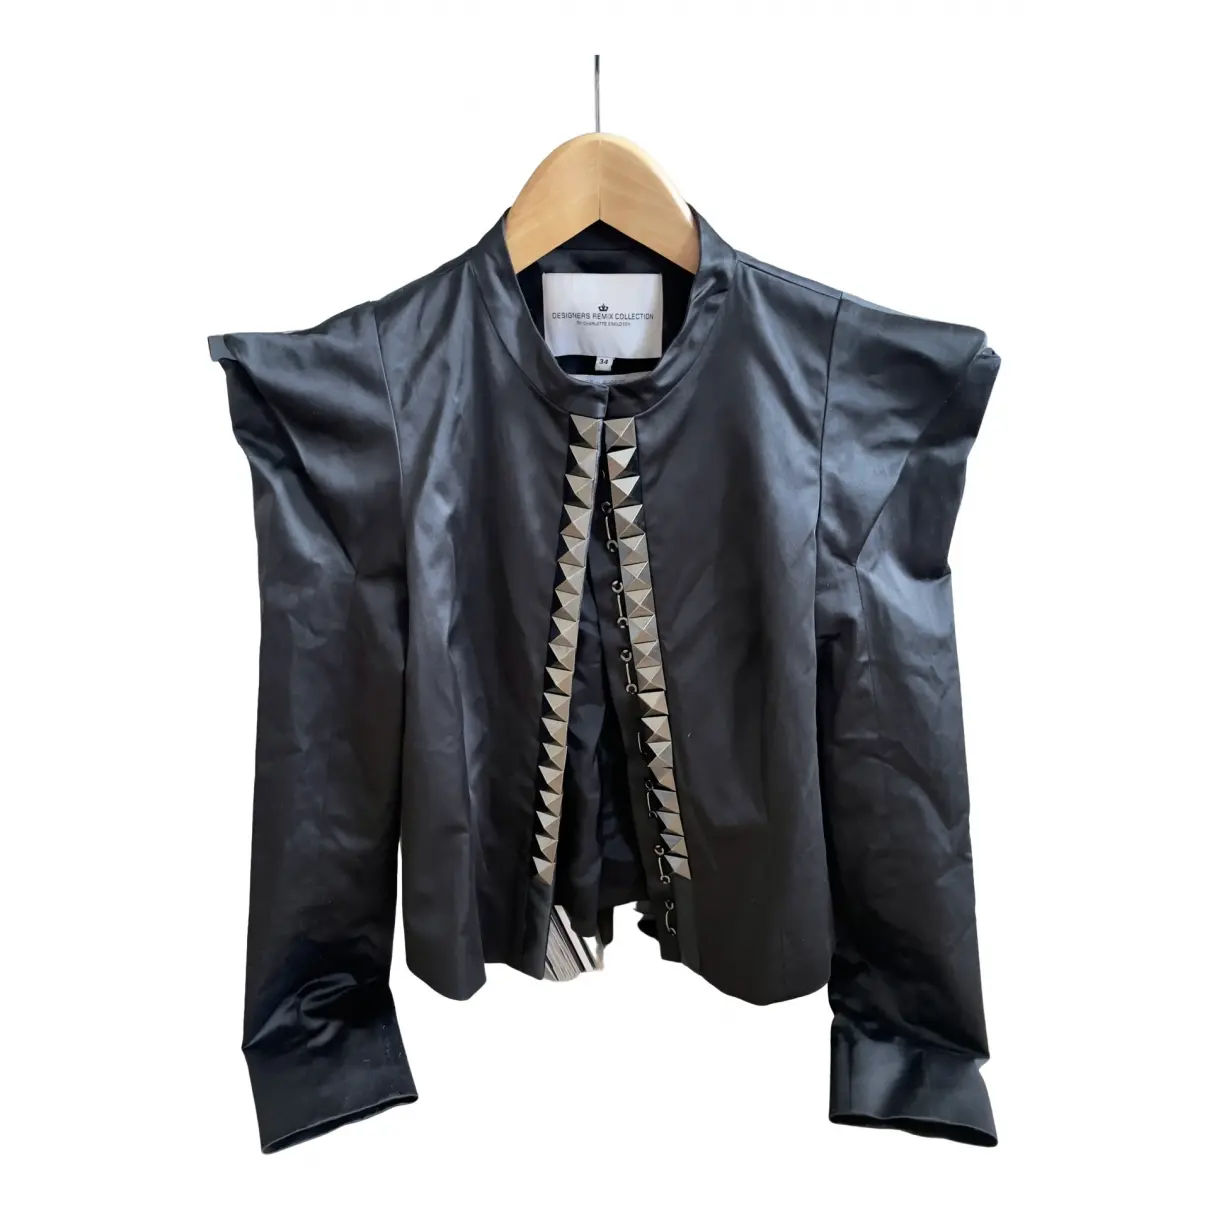 Suit jacket Designers Remix